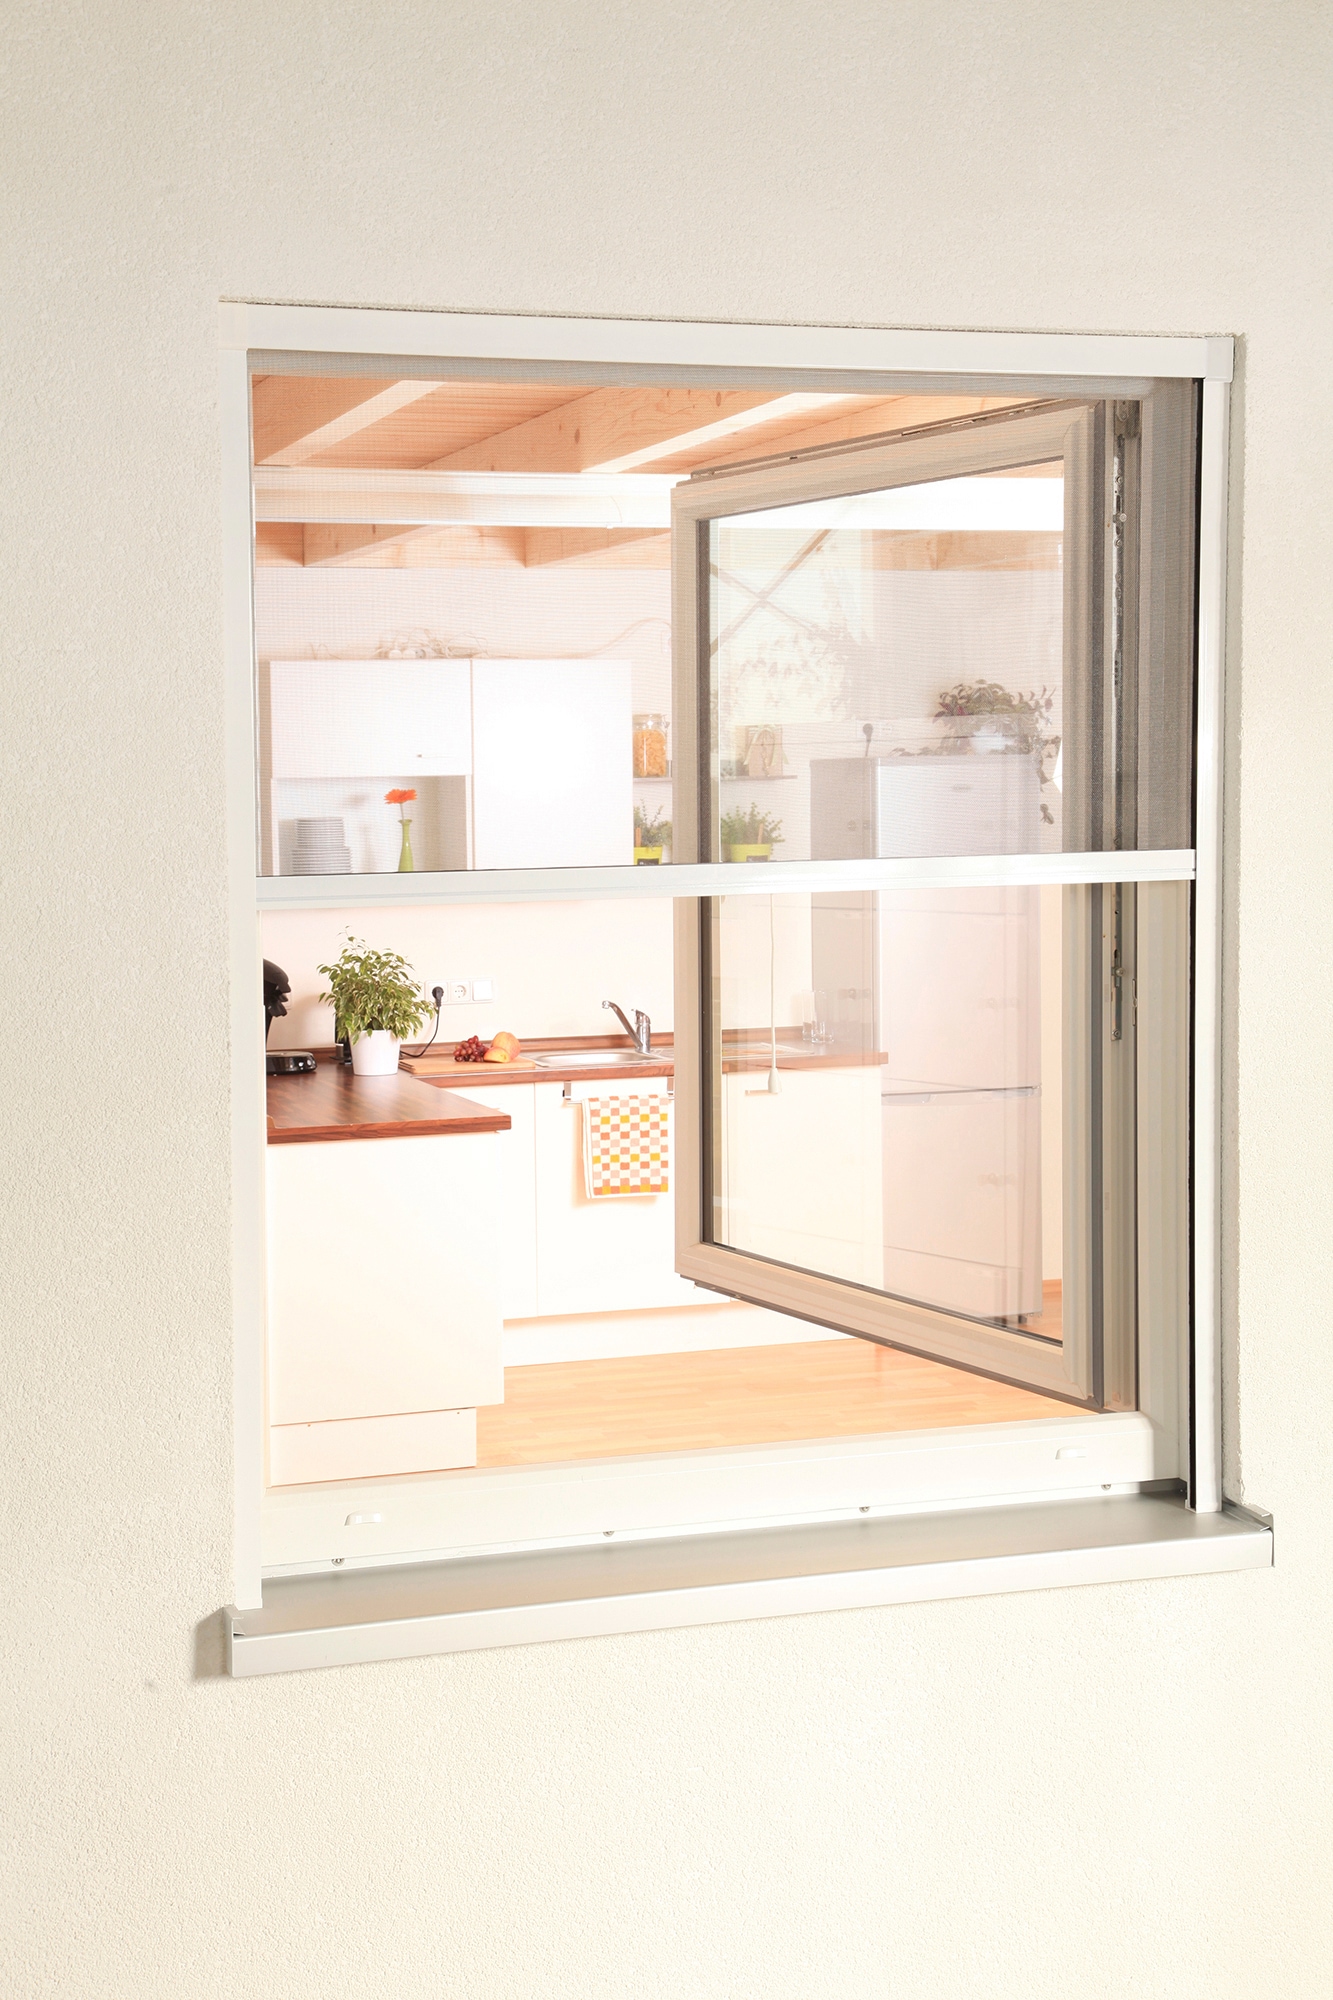 Insektenschutzrollo »SMART«, transparent, für Fenster, weiß/anthrazit, BxH: 100x160 cm